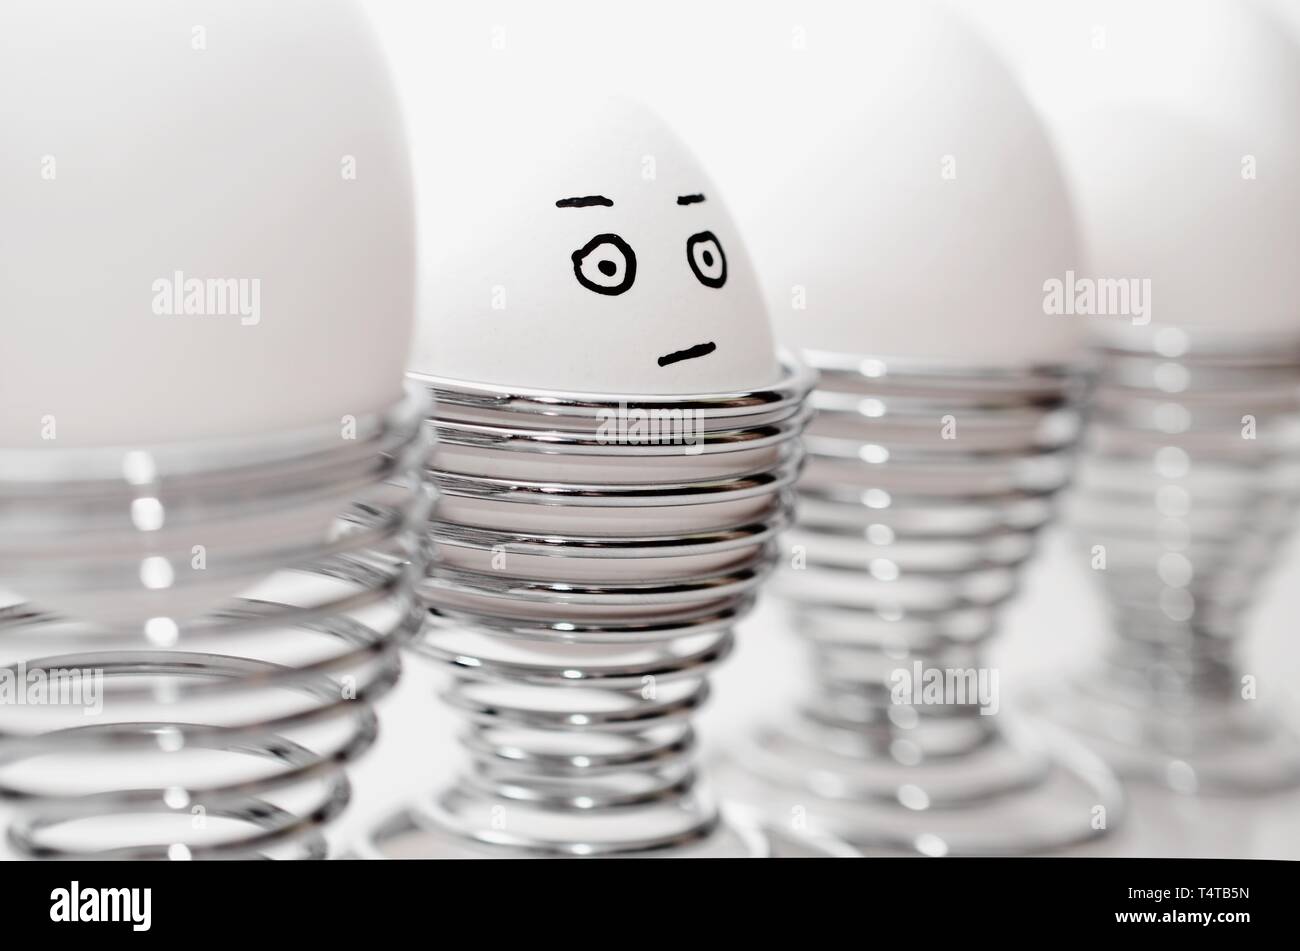 Quatre œufs de poule blanche en argent cm, un oeuf de poule anthropomorphe avec expression du visage, le grincheux à silver egg cups. Banque D'Images